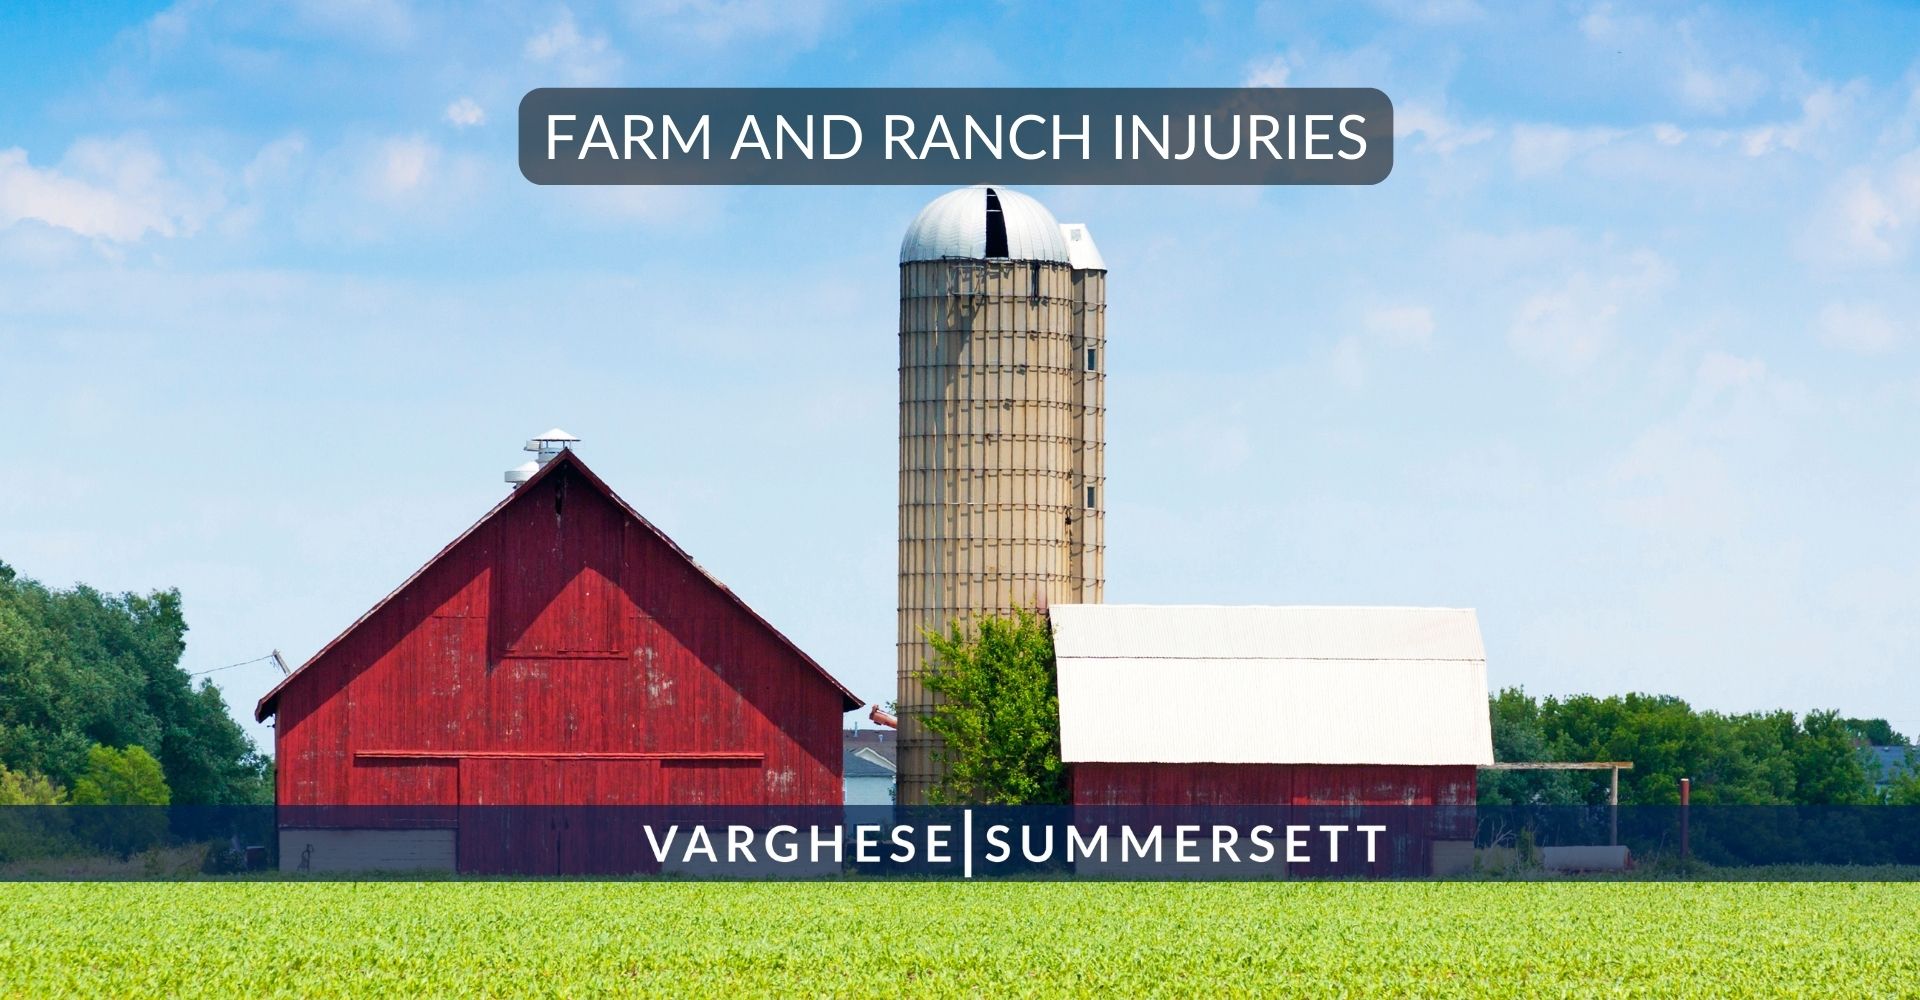 lesiones en granjas y ranchos